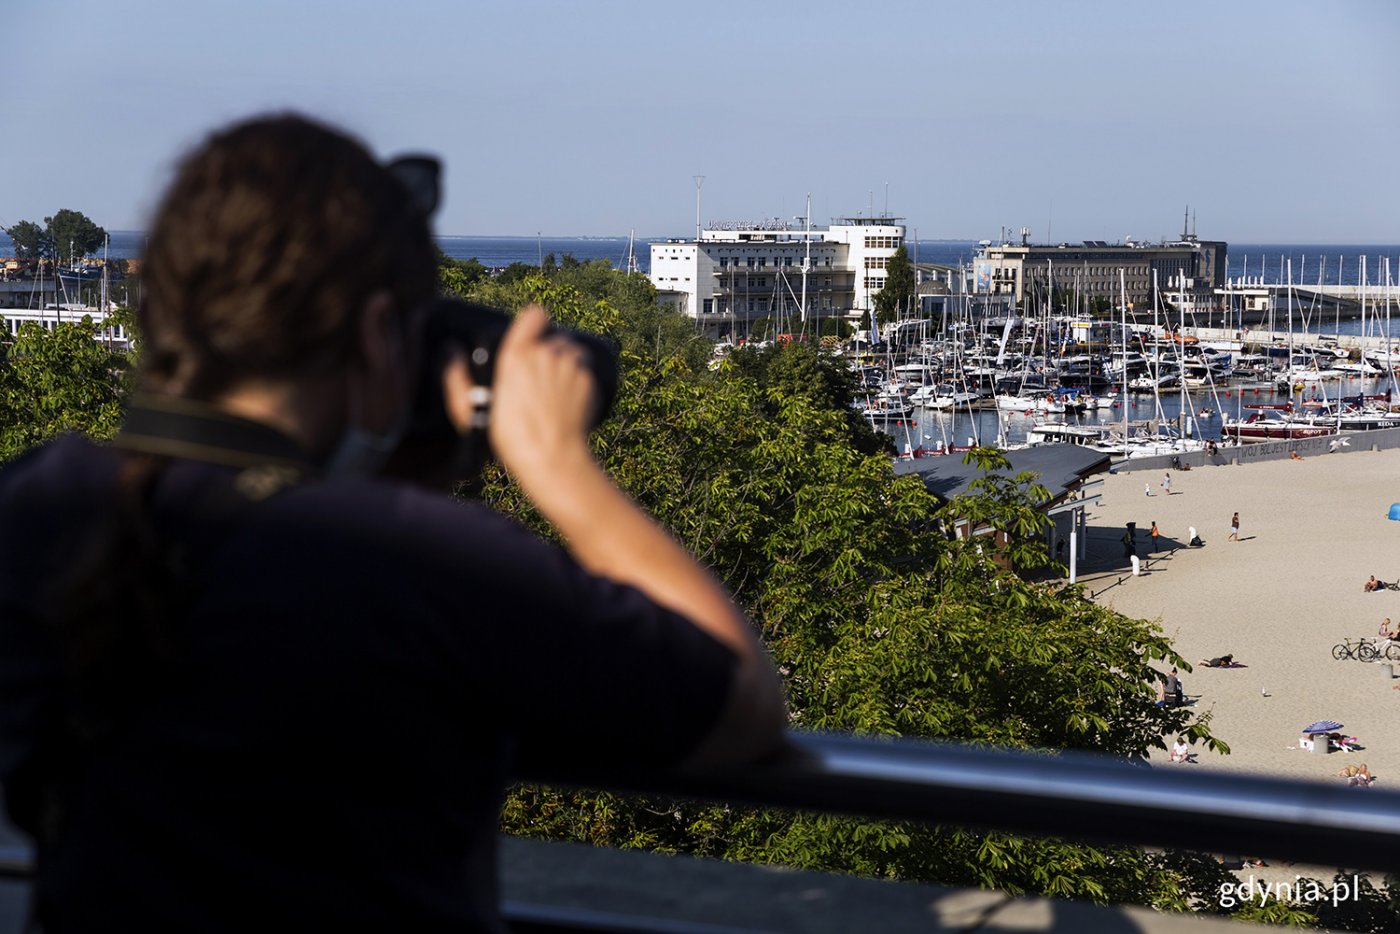 Fotograf robiący zdjęcie panoramiczne miasta.